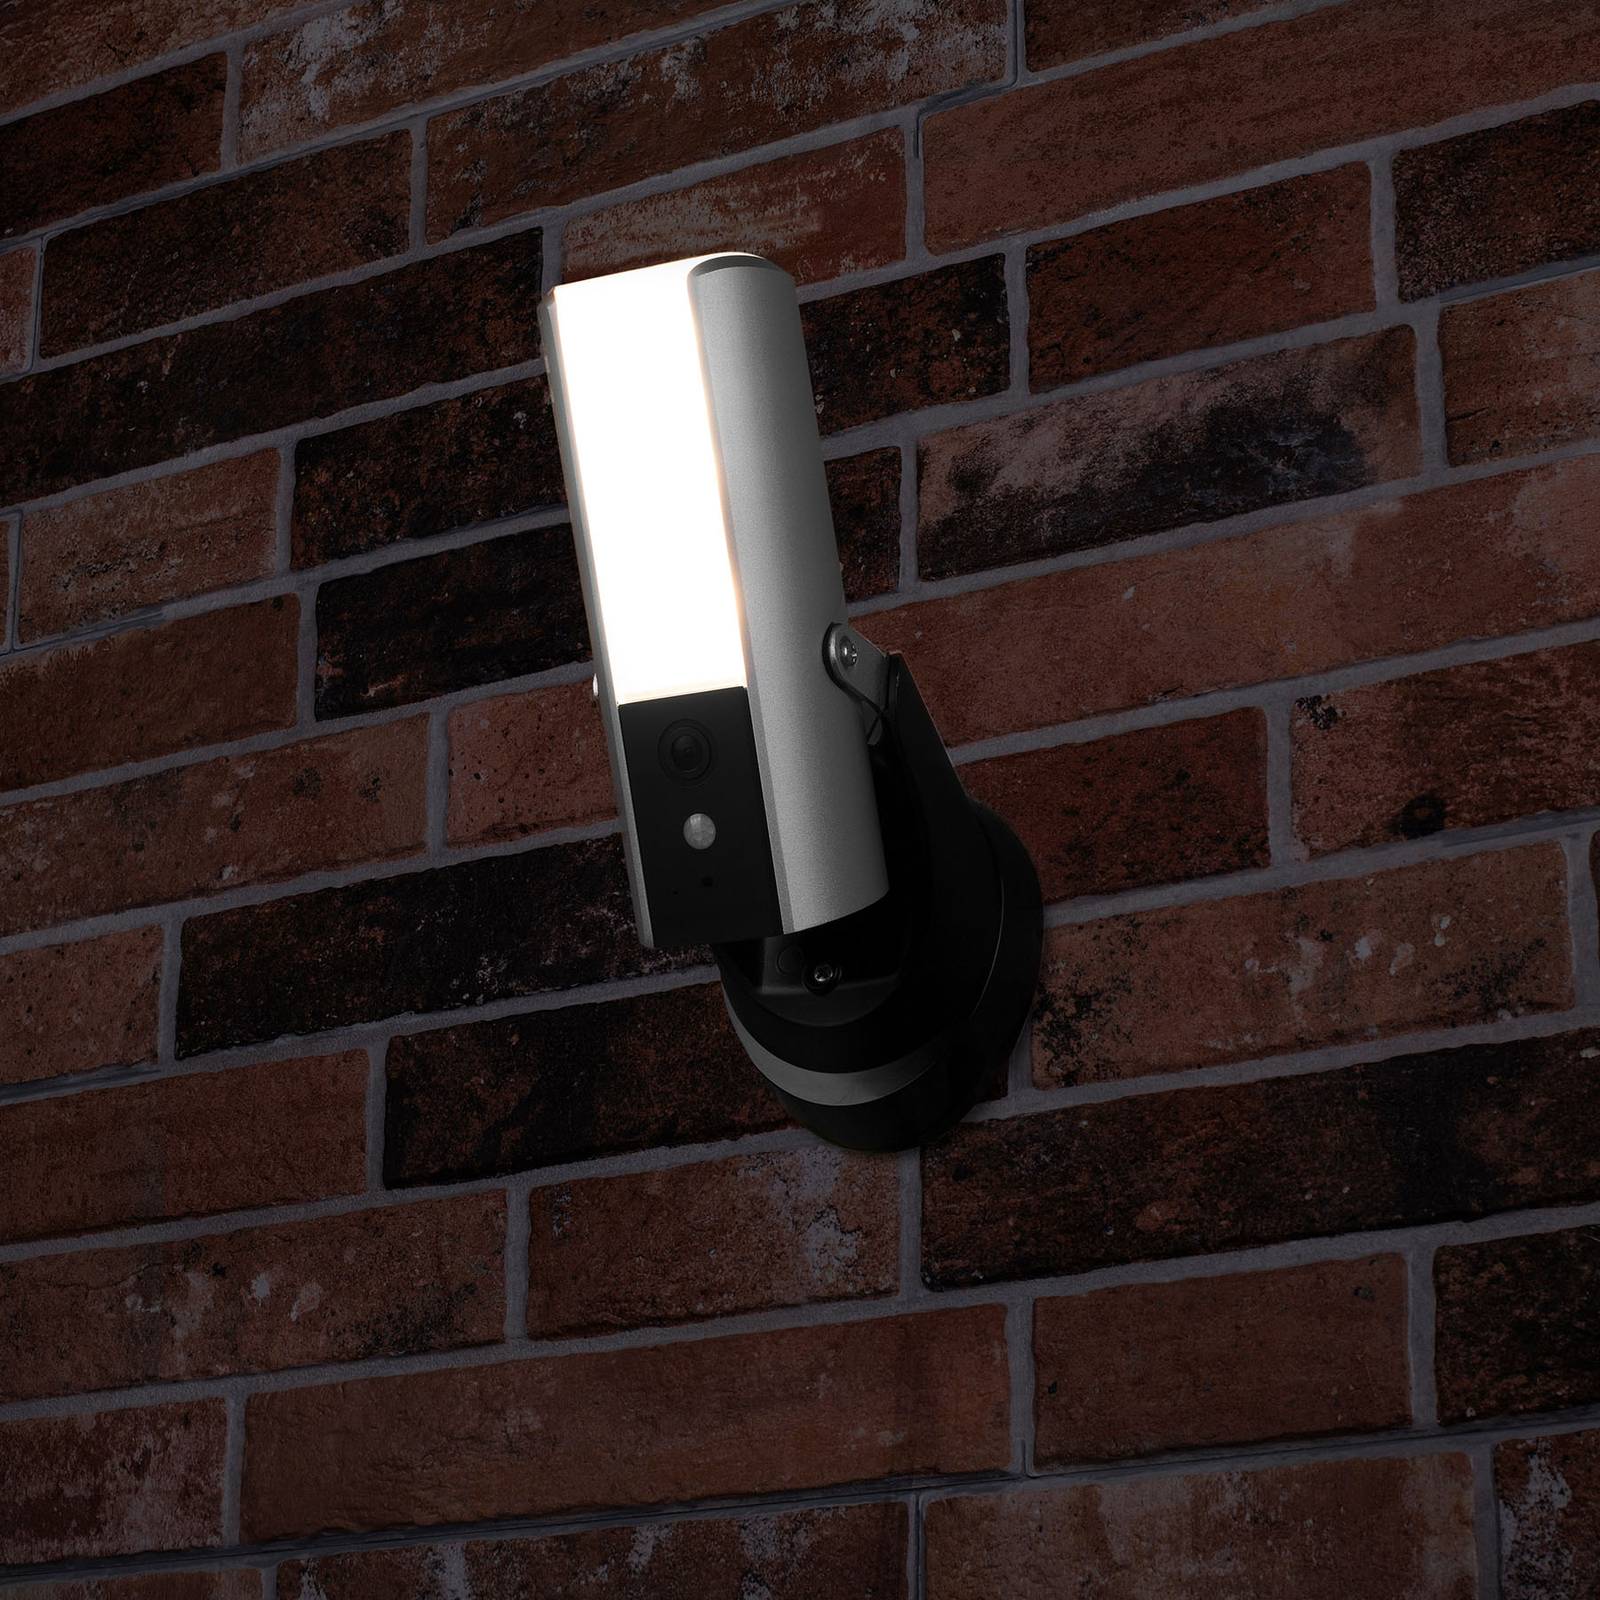 Smartwares Guardian overvåkningskamera med LED-lys